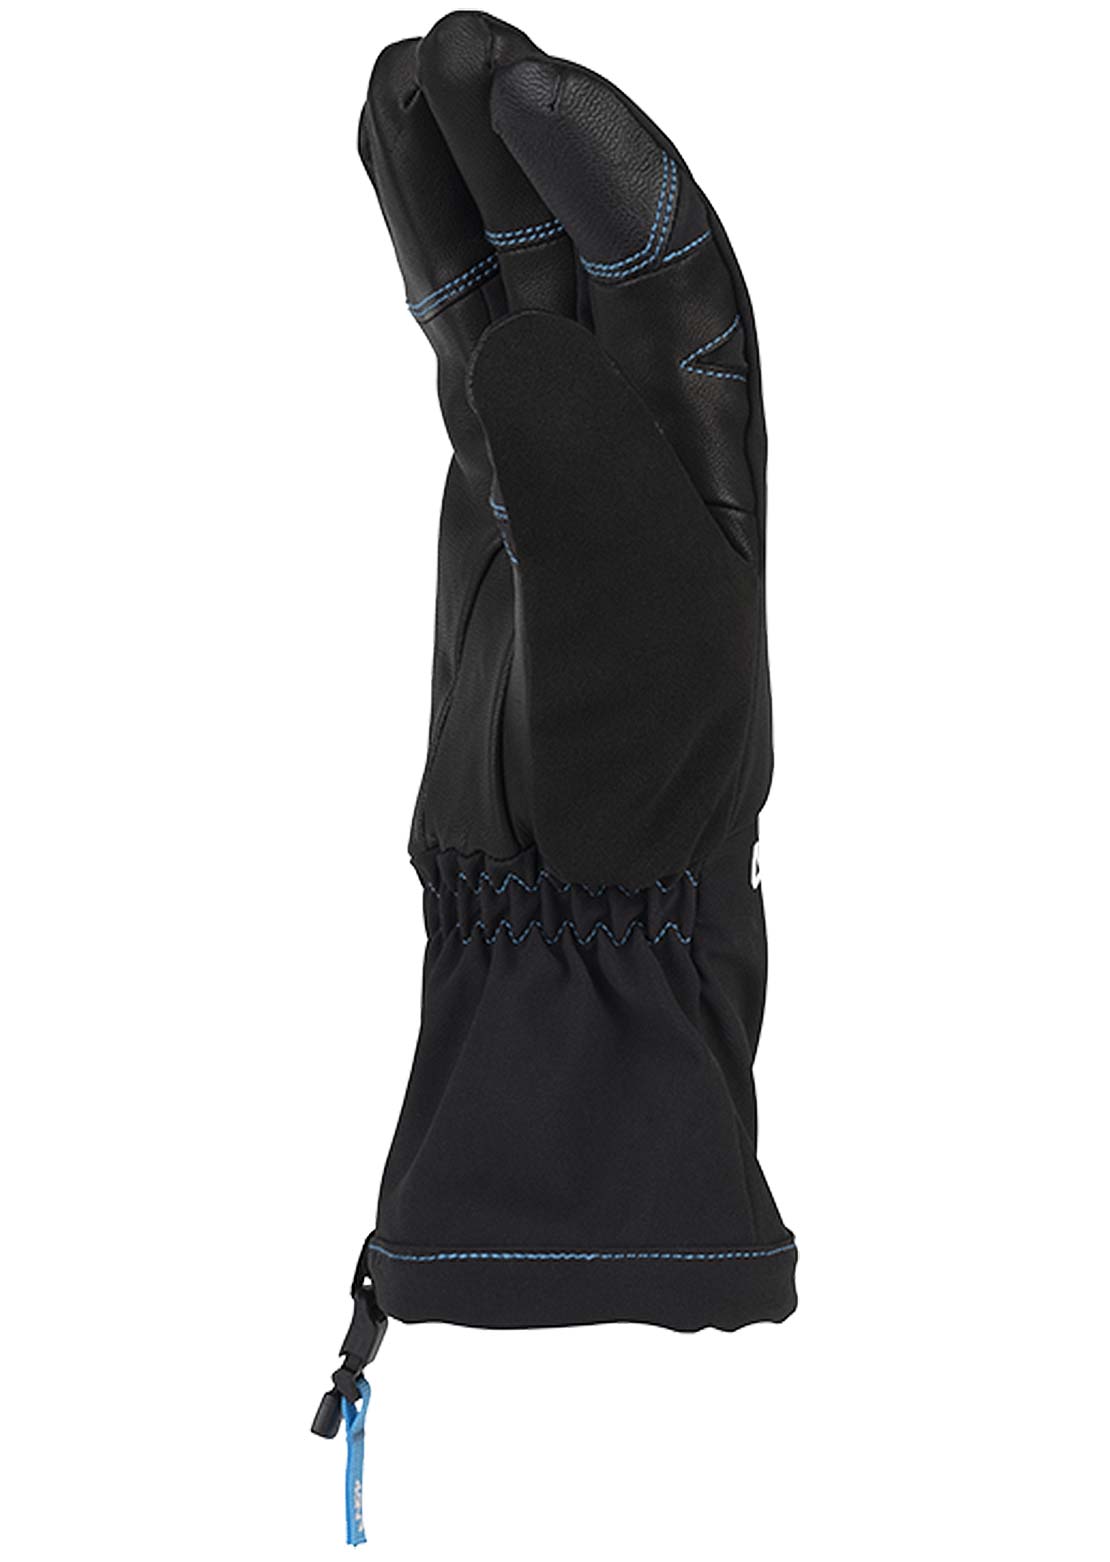 45NRTH Sturmfist 4 Full Finger Gloves Black